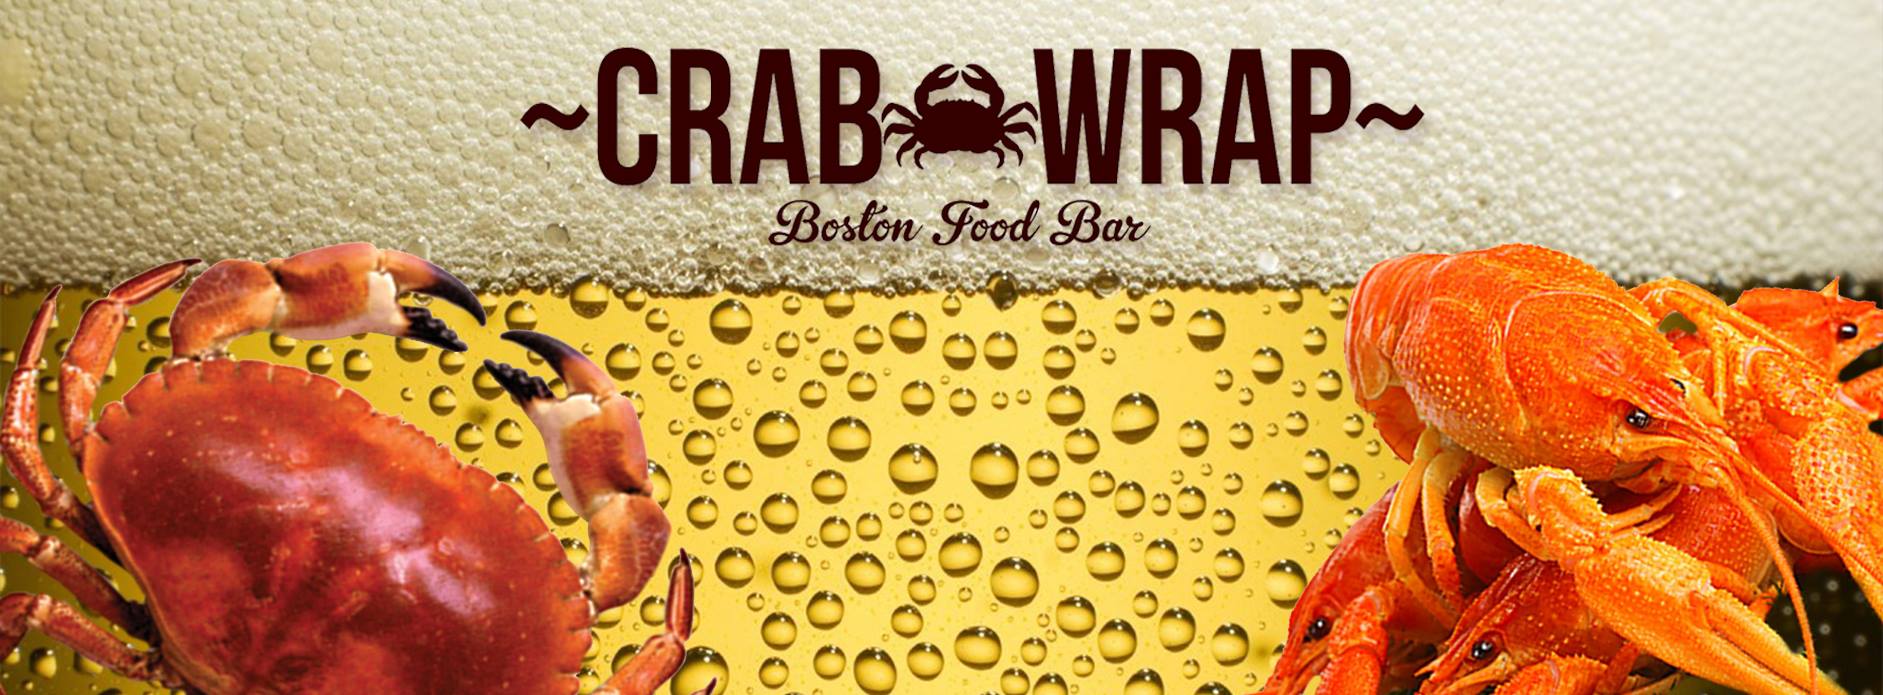 Crab & Wrap Riga